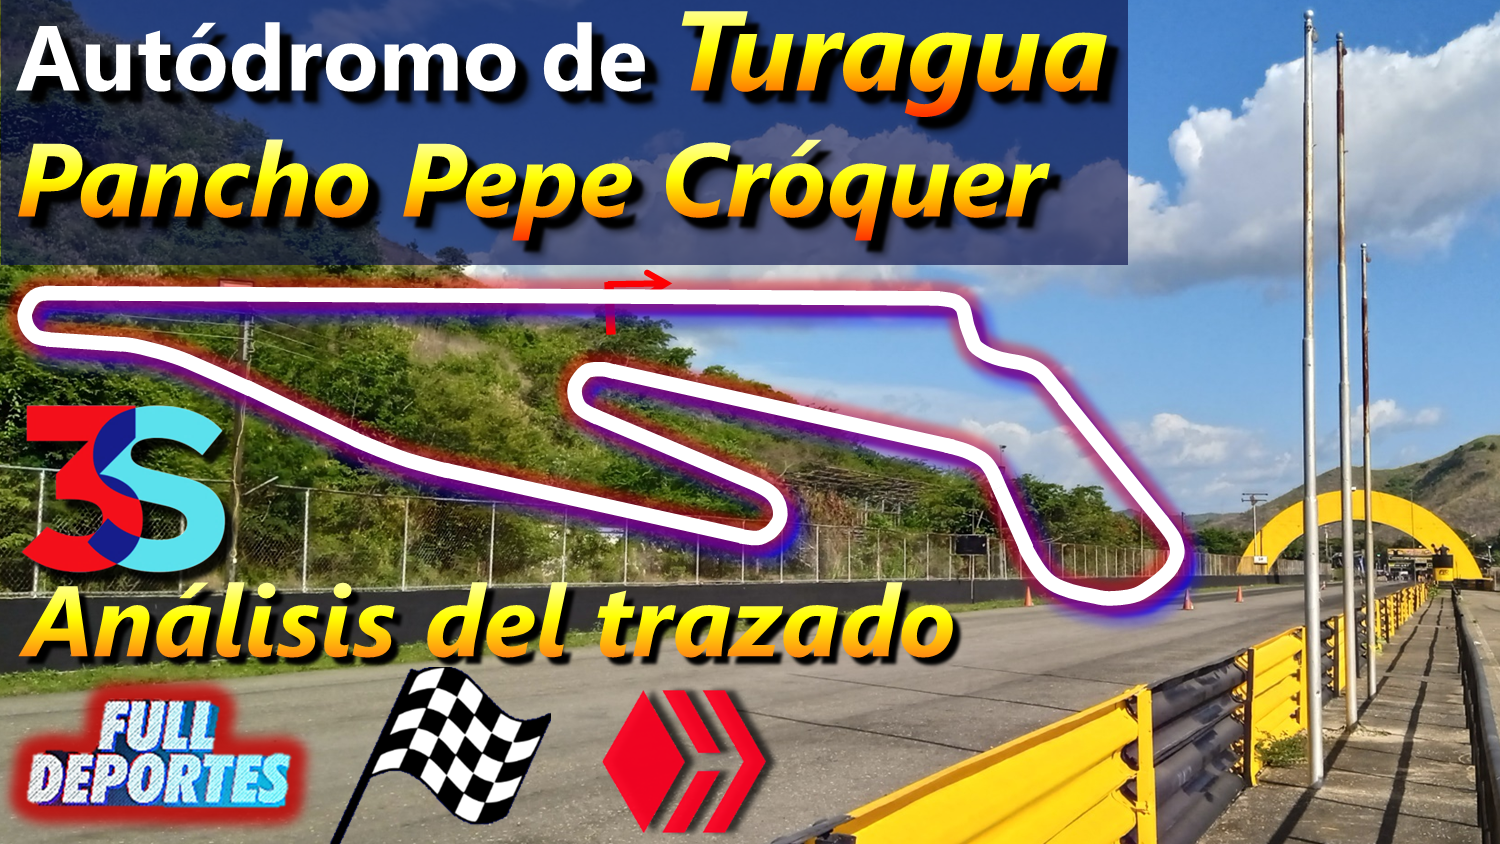 Análisis del Autódromo Internacional Pancho Pepe Cróquer de Turagua Full Deportes Hive acontmotor Aragua Venezuela motores motorsport depotes 3Speak video.png